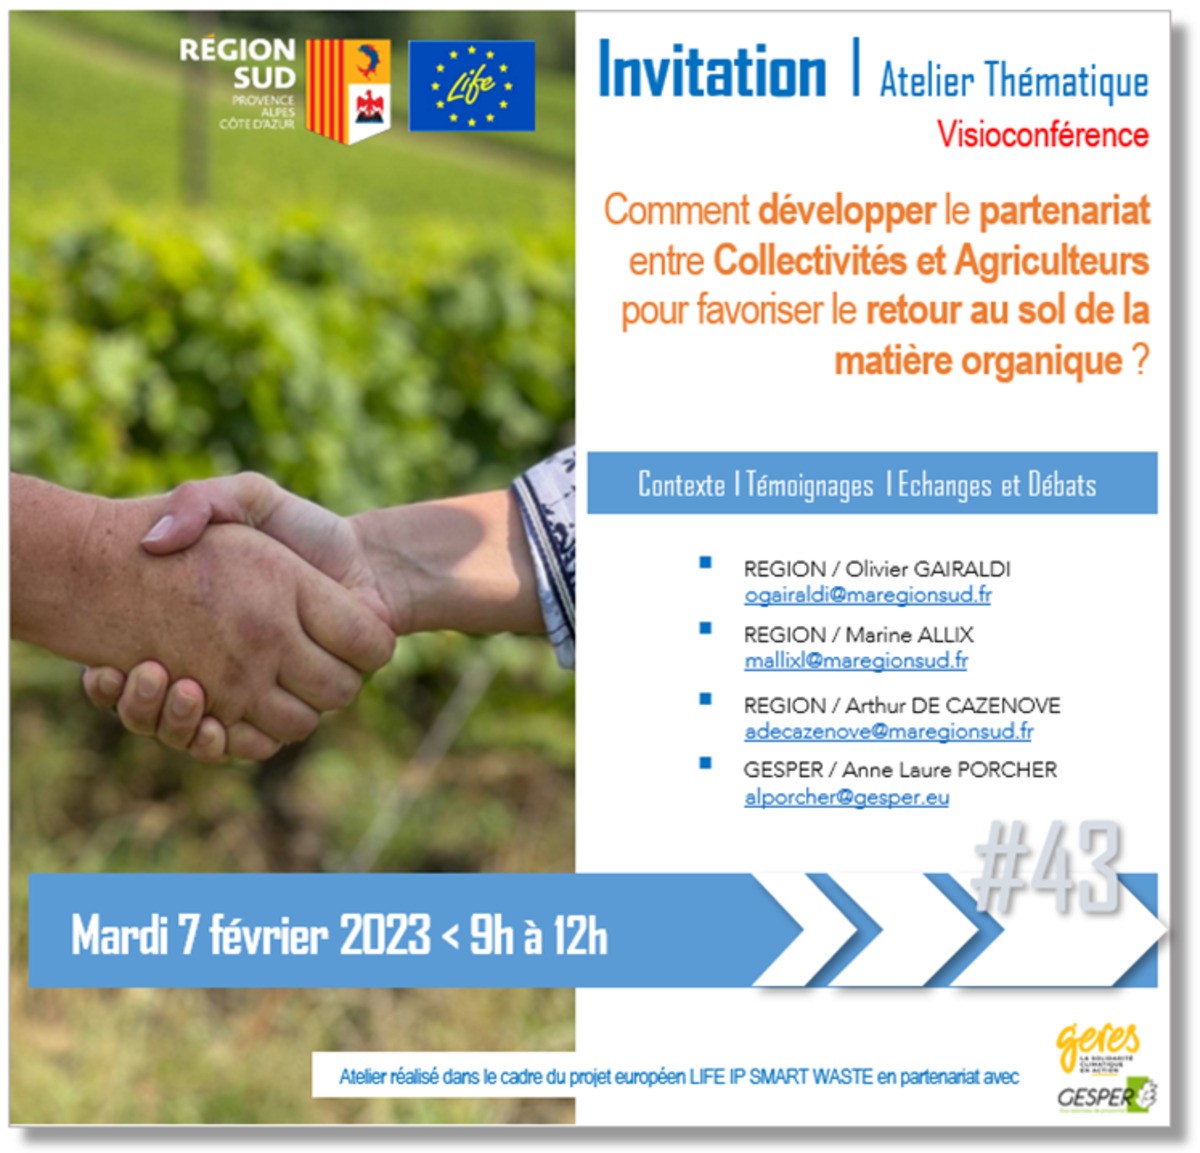 WEBINAIRE #43 - Comment développer le partenariat entre Collectivités et Agriculteurs pour favoriser le retour au sol de la matière organique ? - Projet LIFE IP SMART WASTE